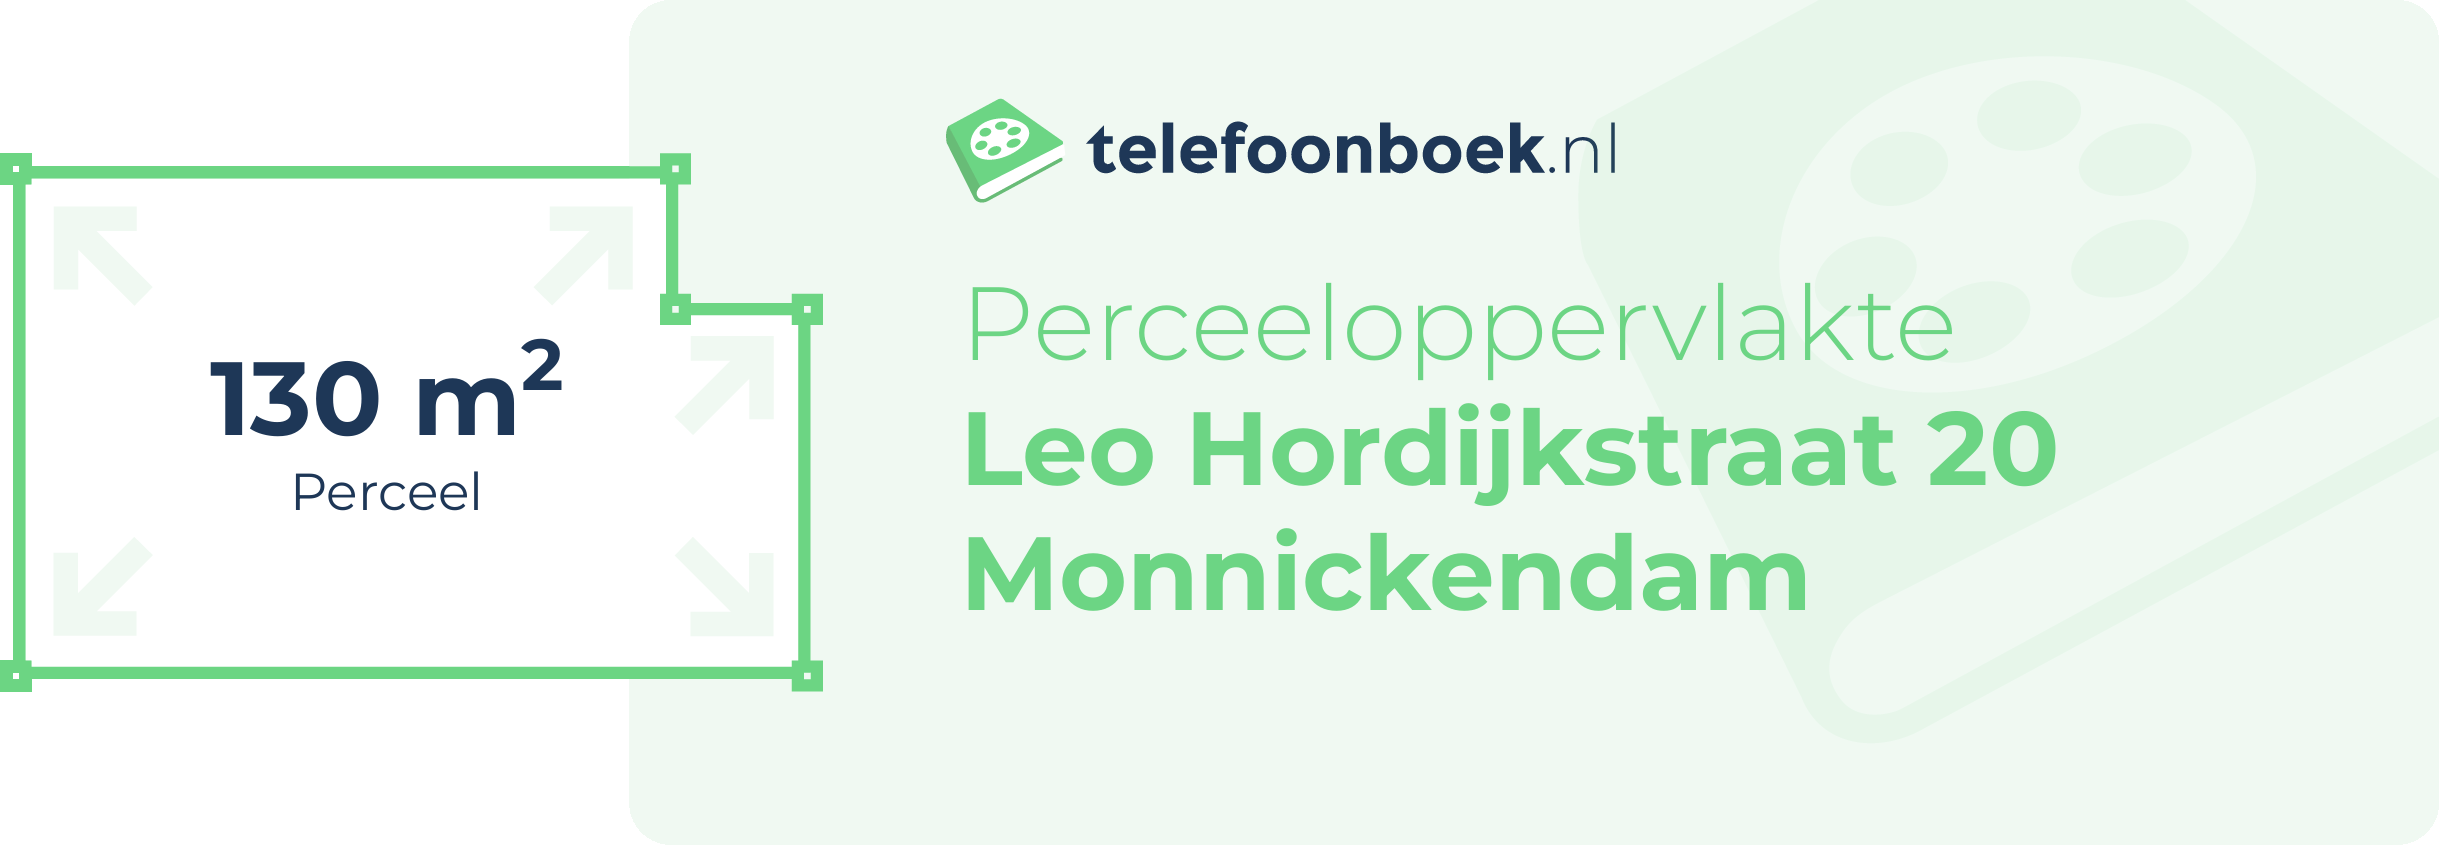 Perceeloppervlakte Leo Hordijkstraat 20 Monnickendam